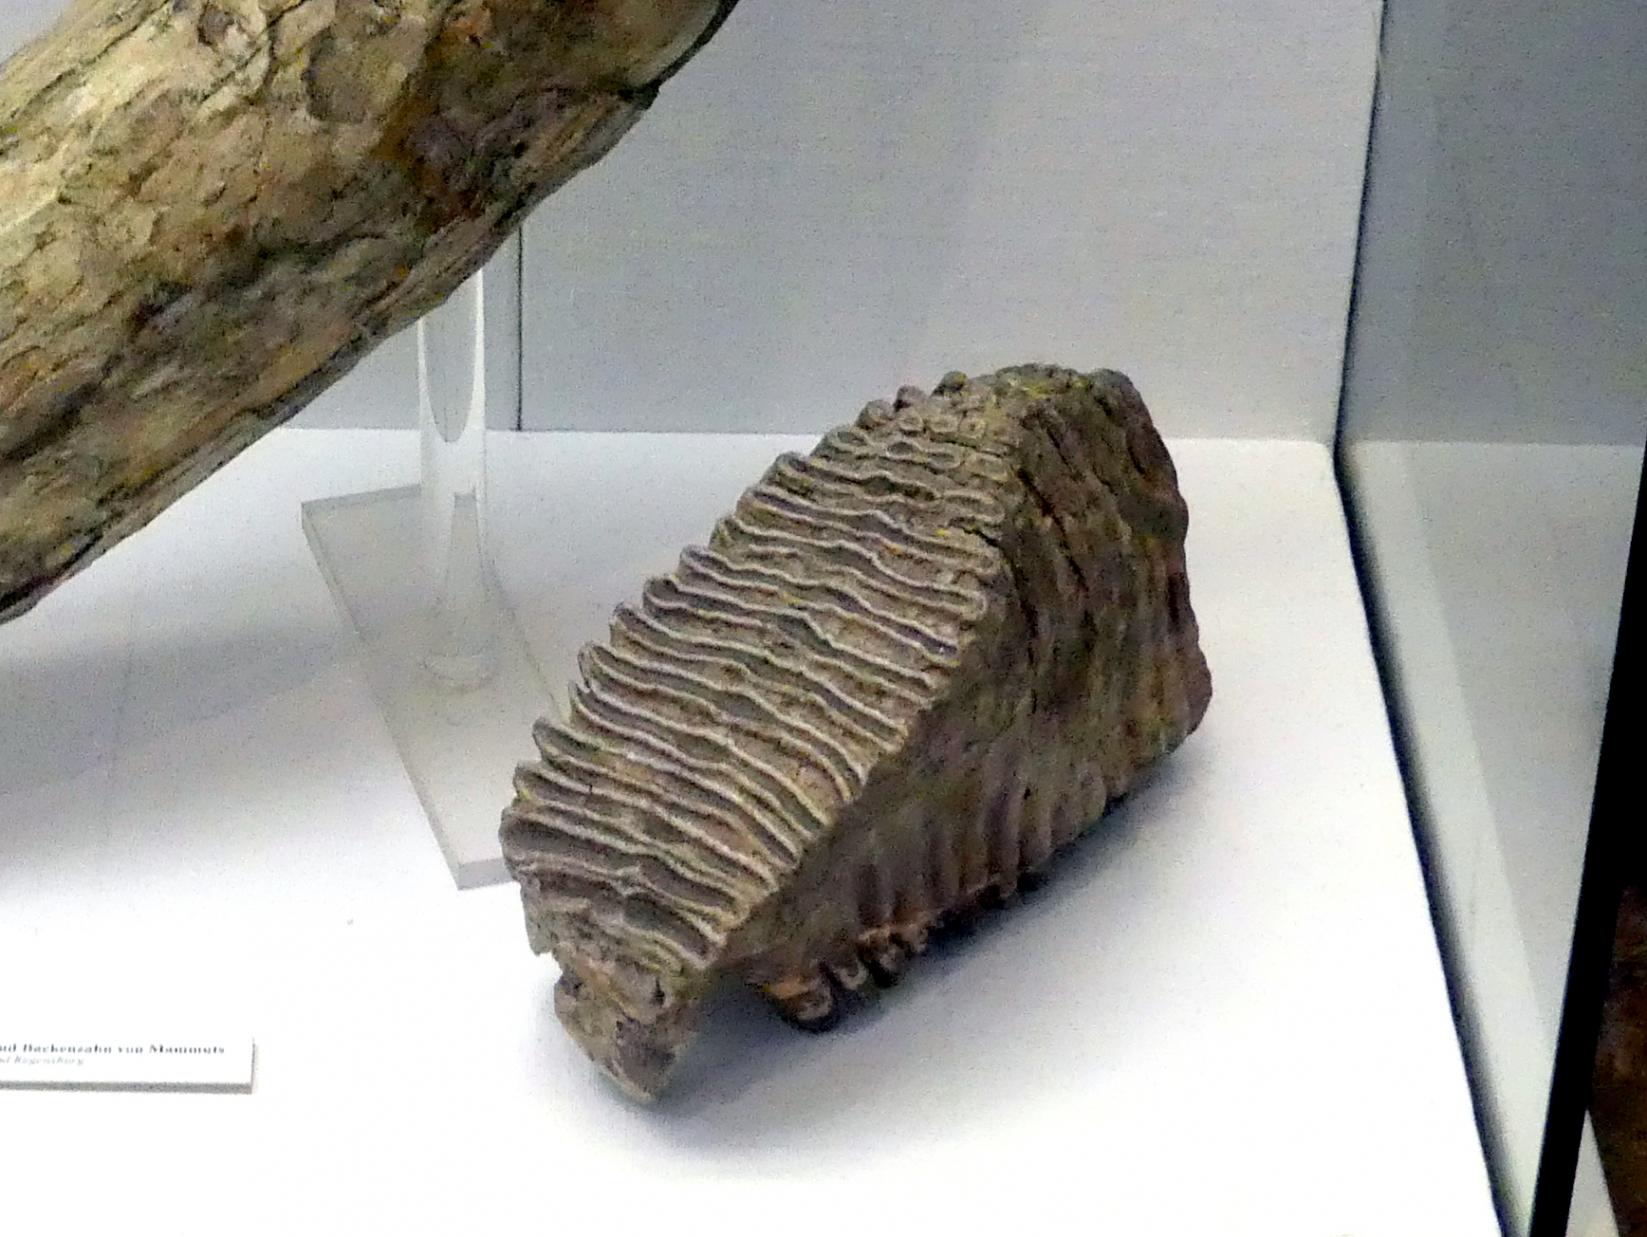 Backenzahn eines Mammuts, Paläolithikum, 600000 - 10000 v. Chr.